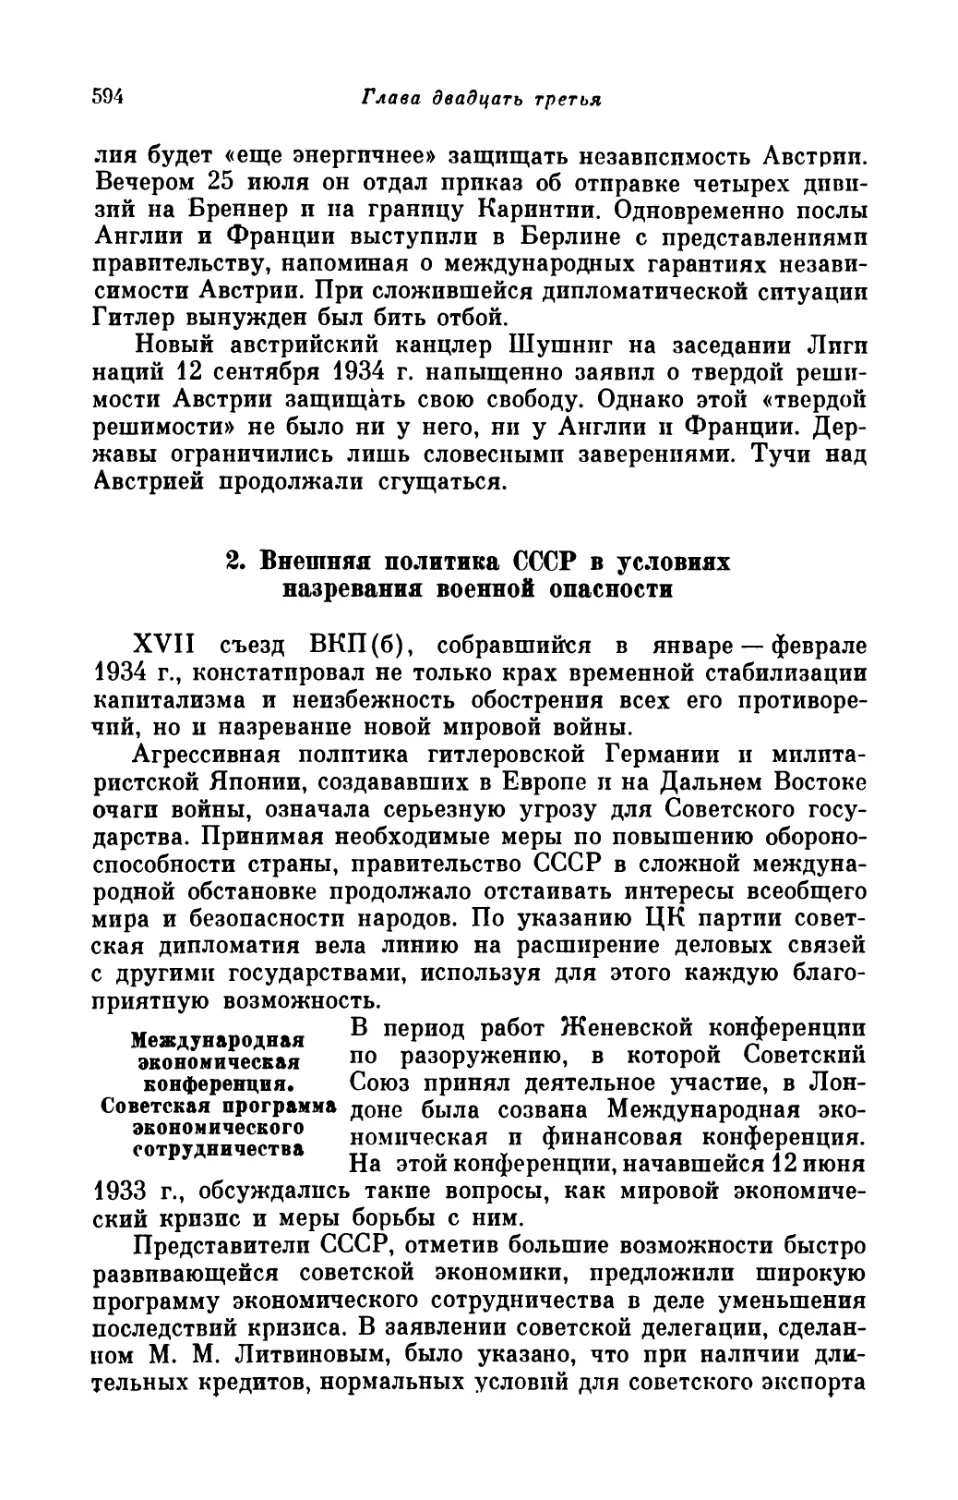 2. Внешняя политика СССР в условиях назревания военной опасности